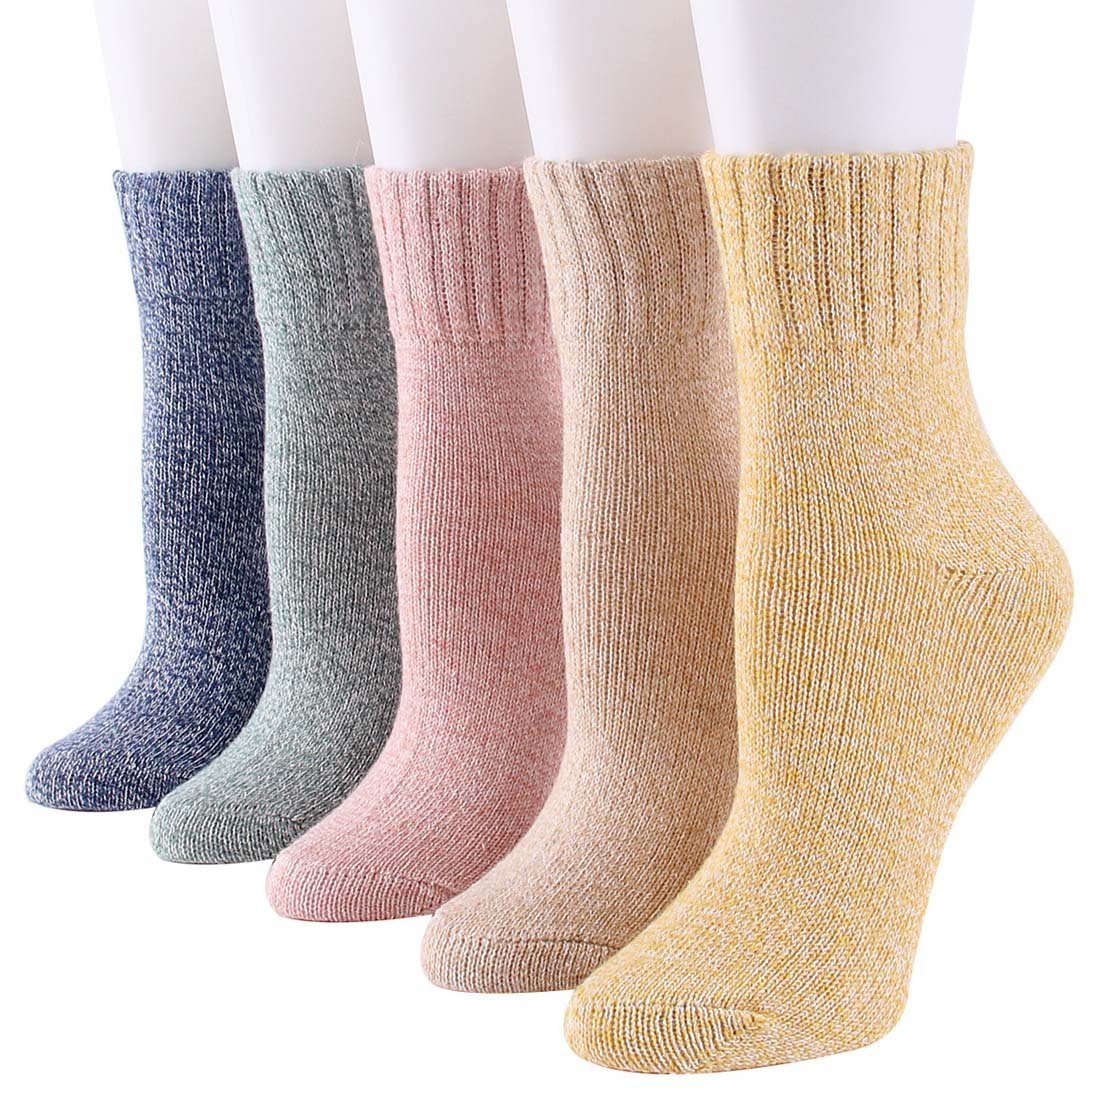 YANN Strümpfe Dicke, warme und weiche Damensocken für den Winter (5-Paar) Einfarbige Socken aus Fleece-Baumwolle bunt1 | Strümpfe